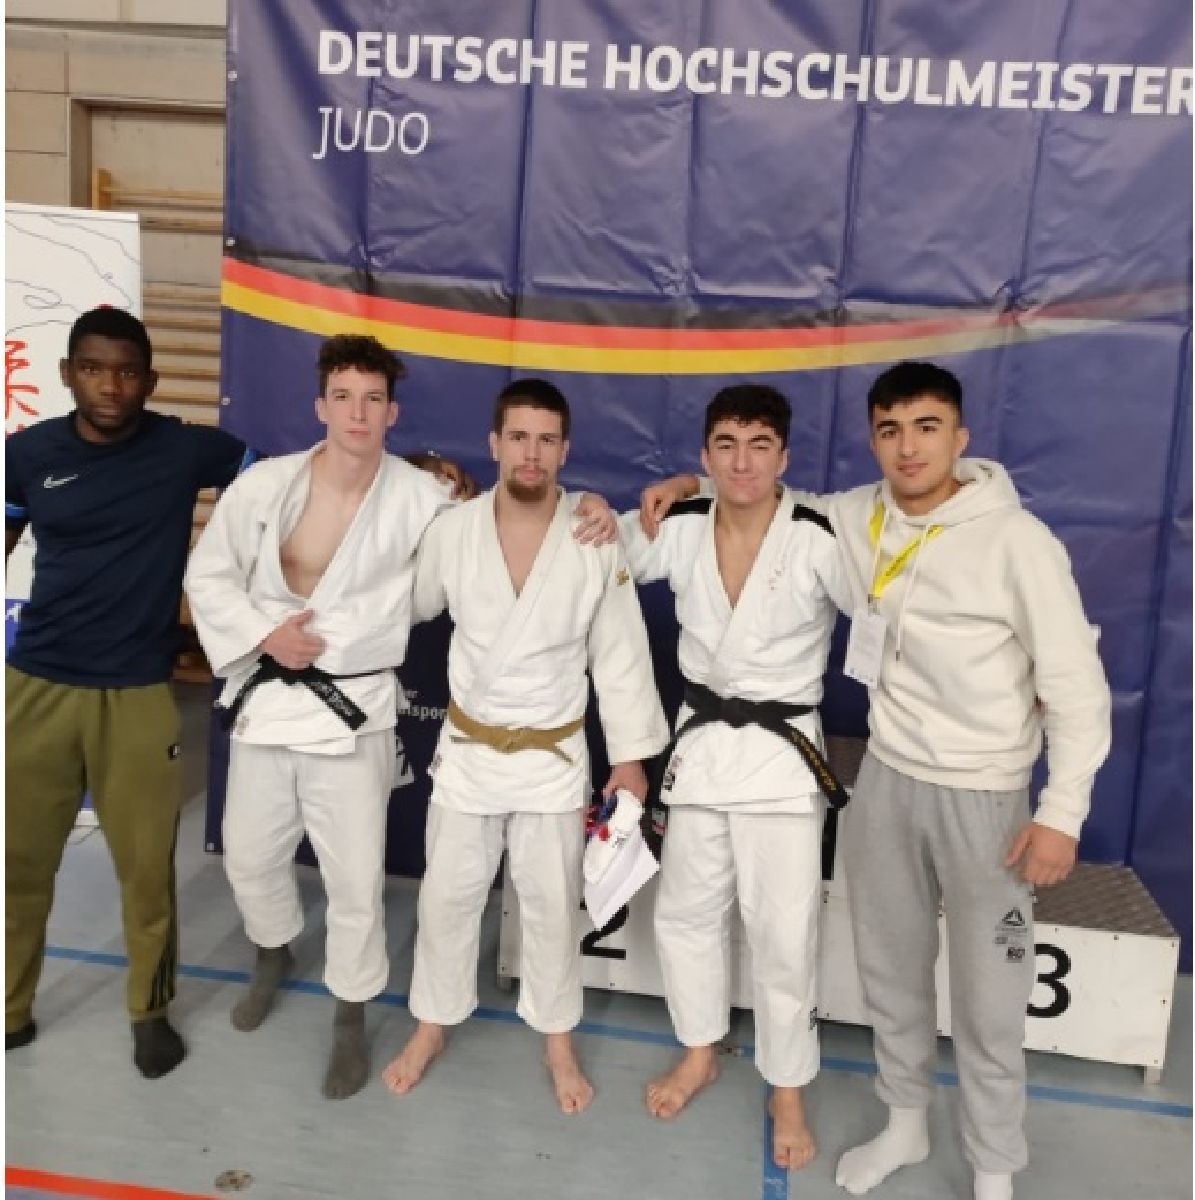 Starke Kämpfe der saarländischen Judoka und 2x Bronze auf den Deutschen Judo- Hochschulmeisterschaften